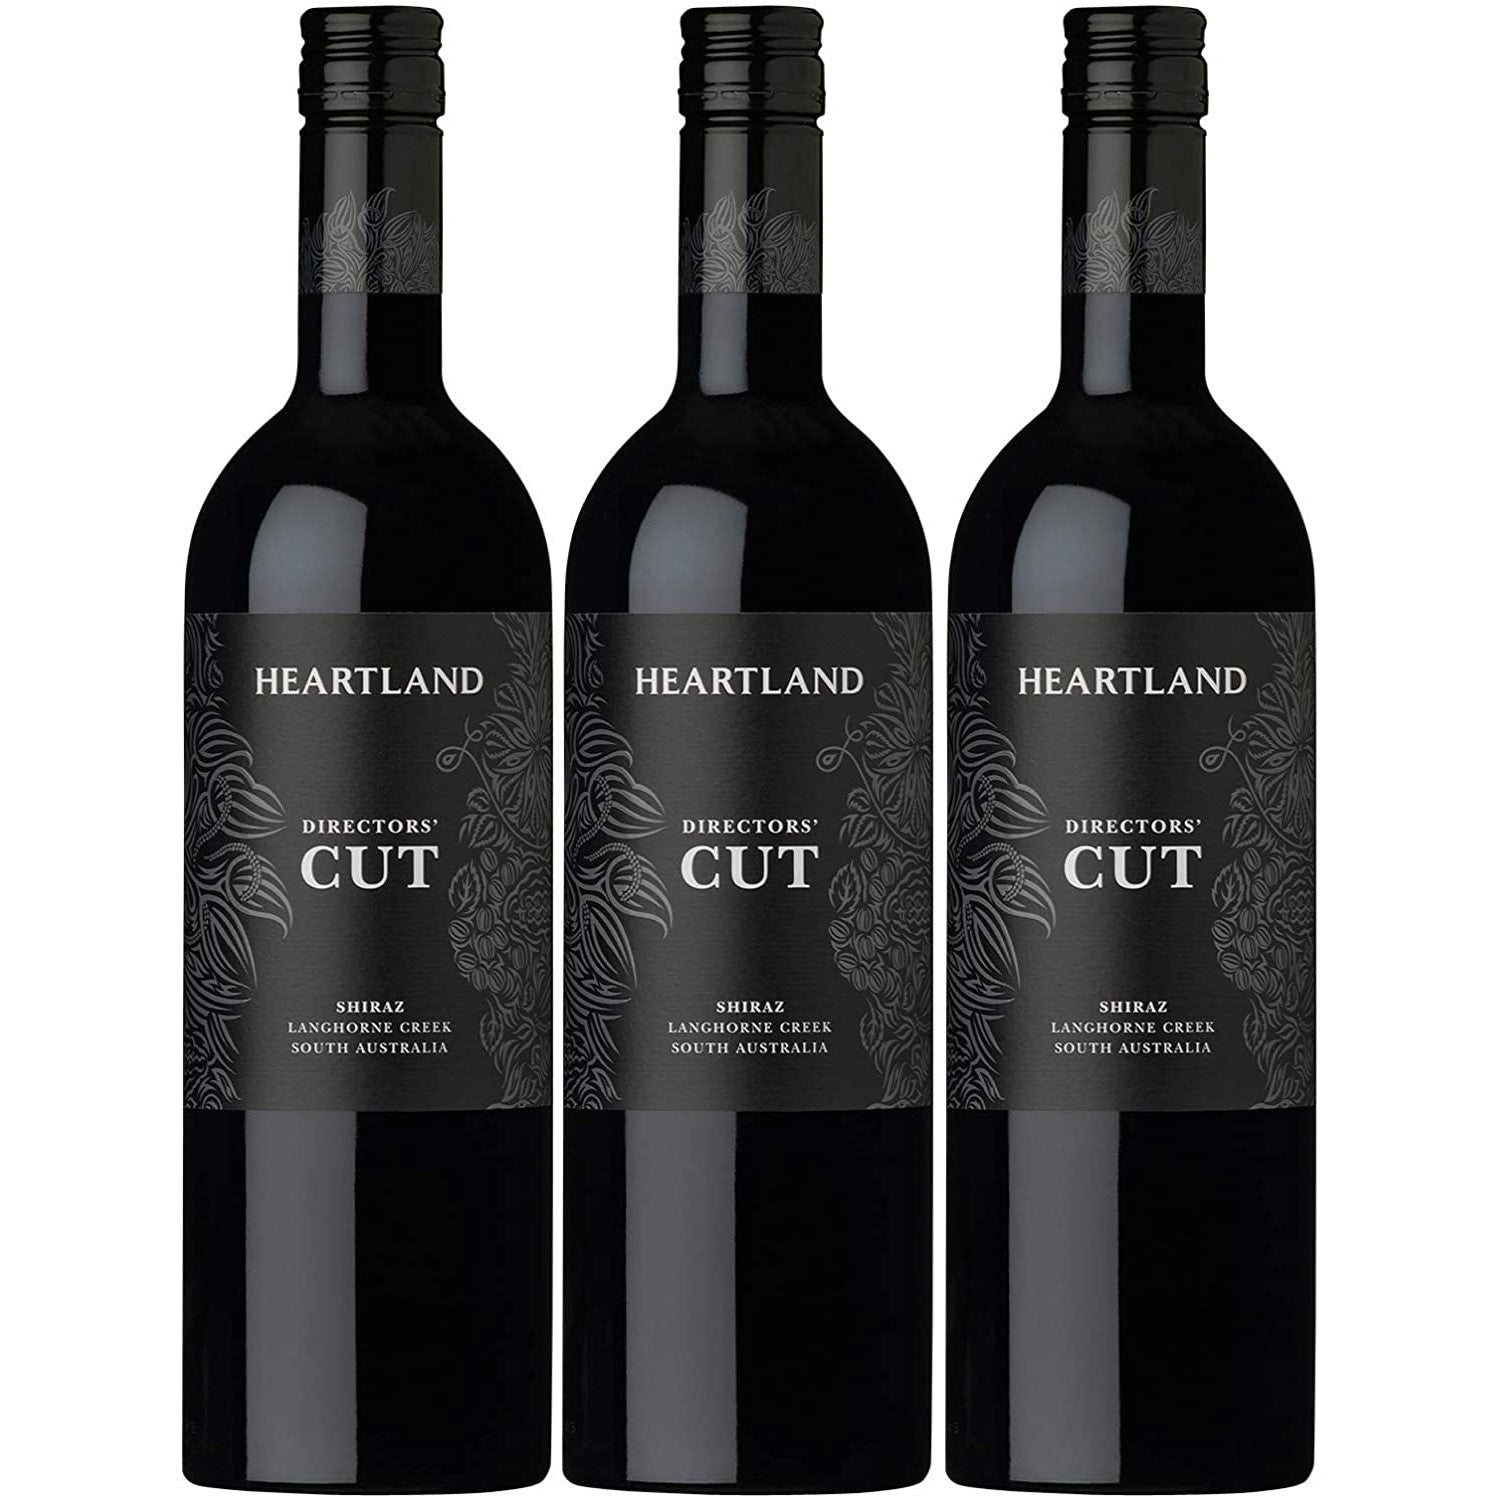 Heartland Directors' Cut Shiraz Langhorne Creek Rotwein Wein trocken Australien (3 x 0.75l) - Versanel -